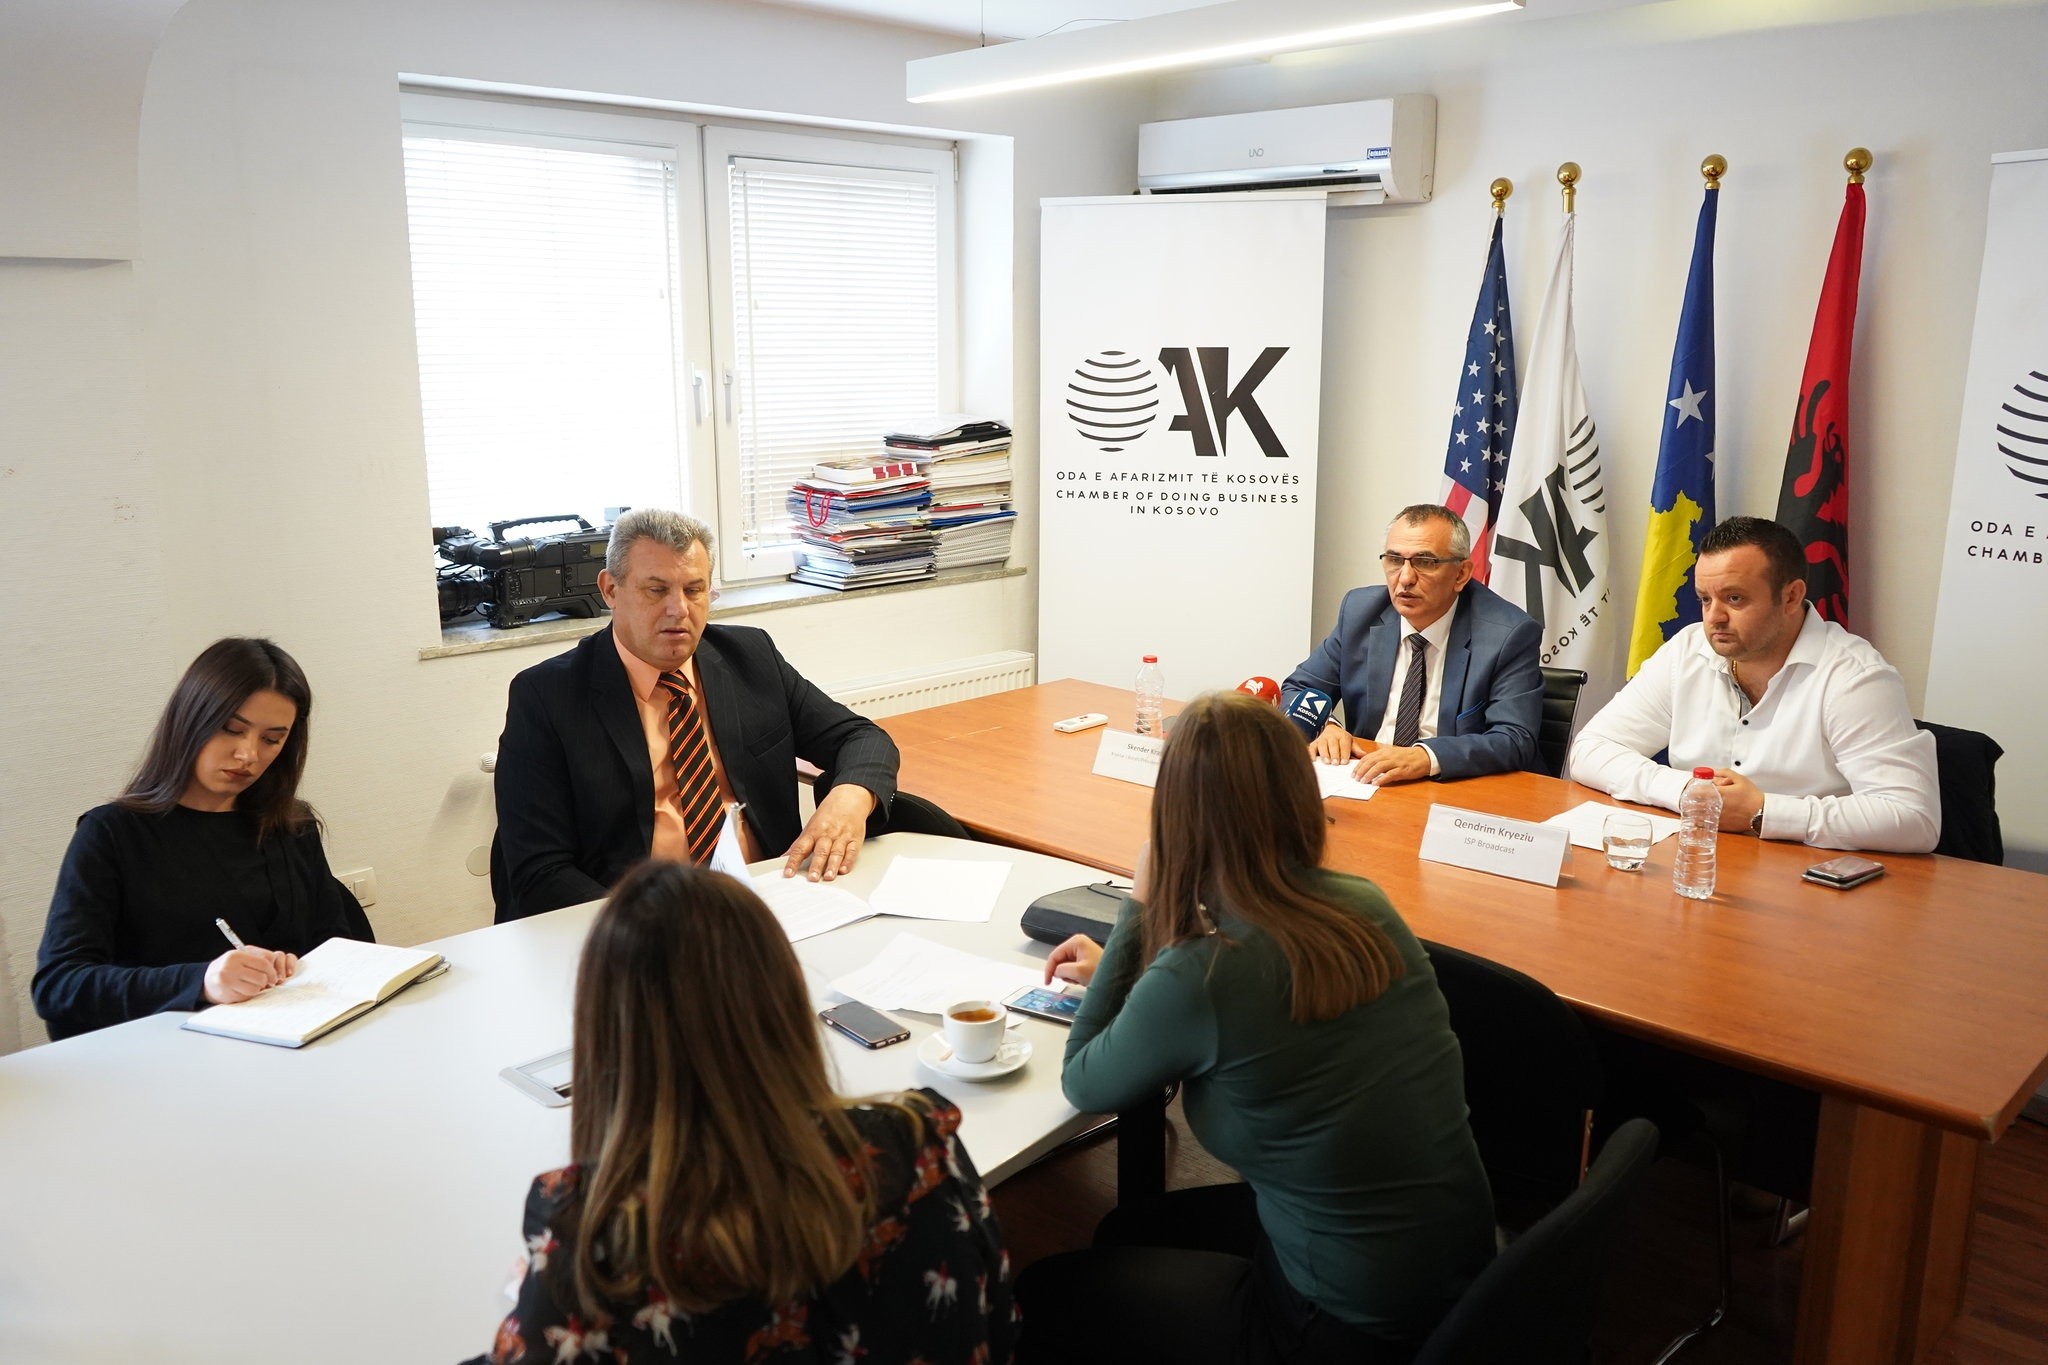 OAK përshëndetë liberalizimin e tregut të punës mes Kosovës dhe Shqipërisë